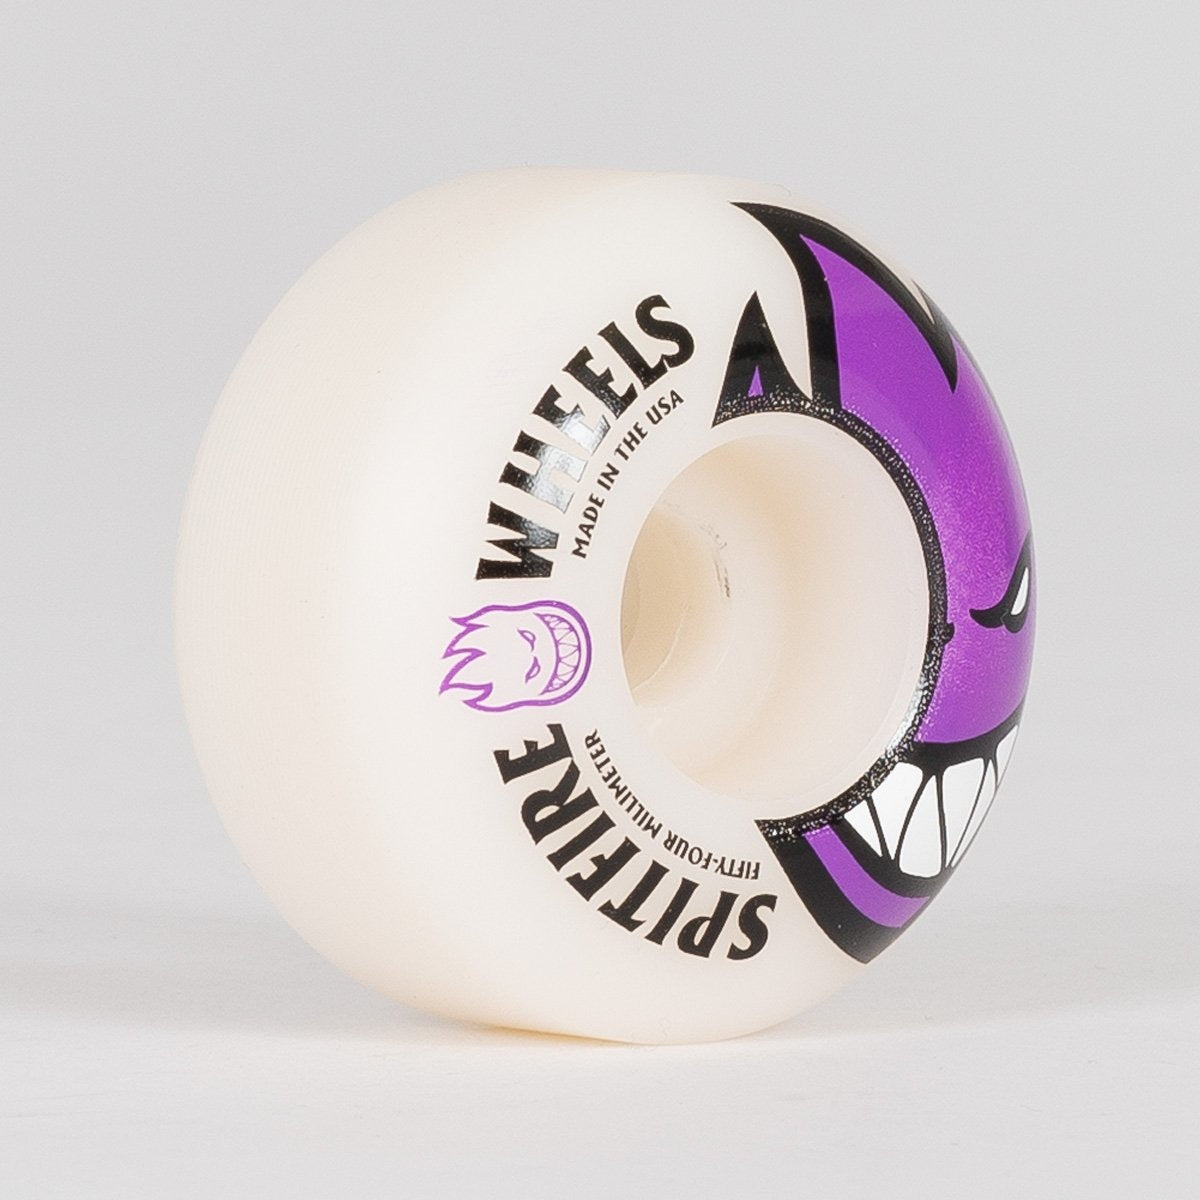 Spitfire Bighead Wheels White/Purple 54mm - Skateboard